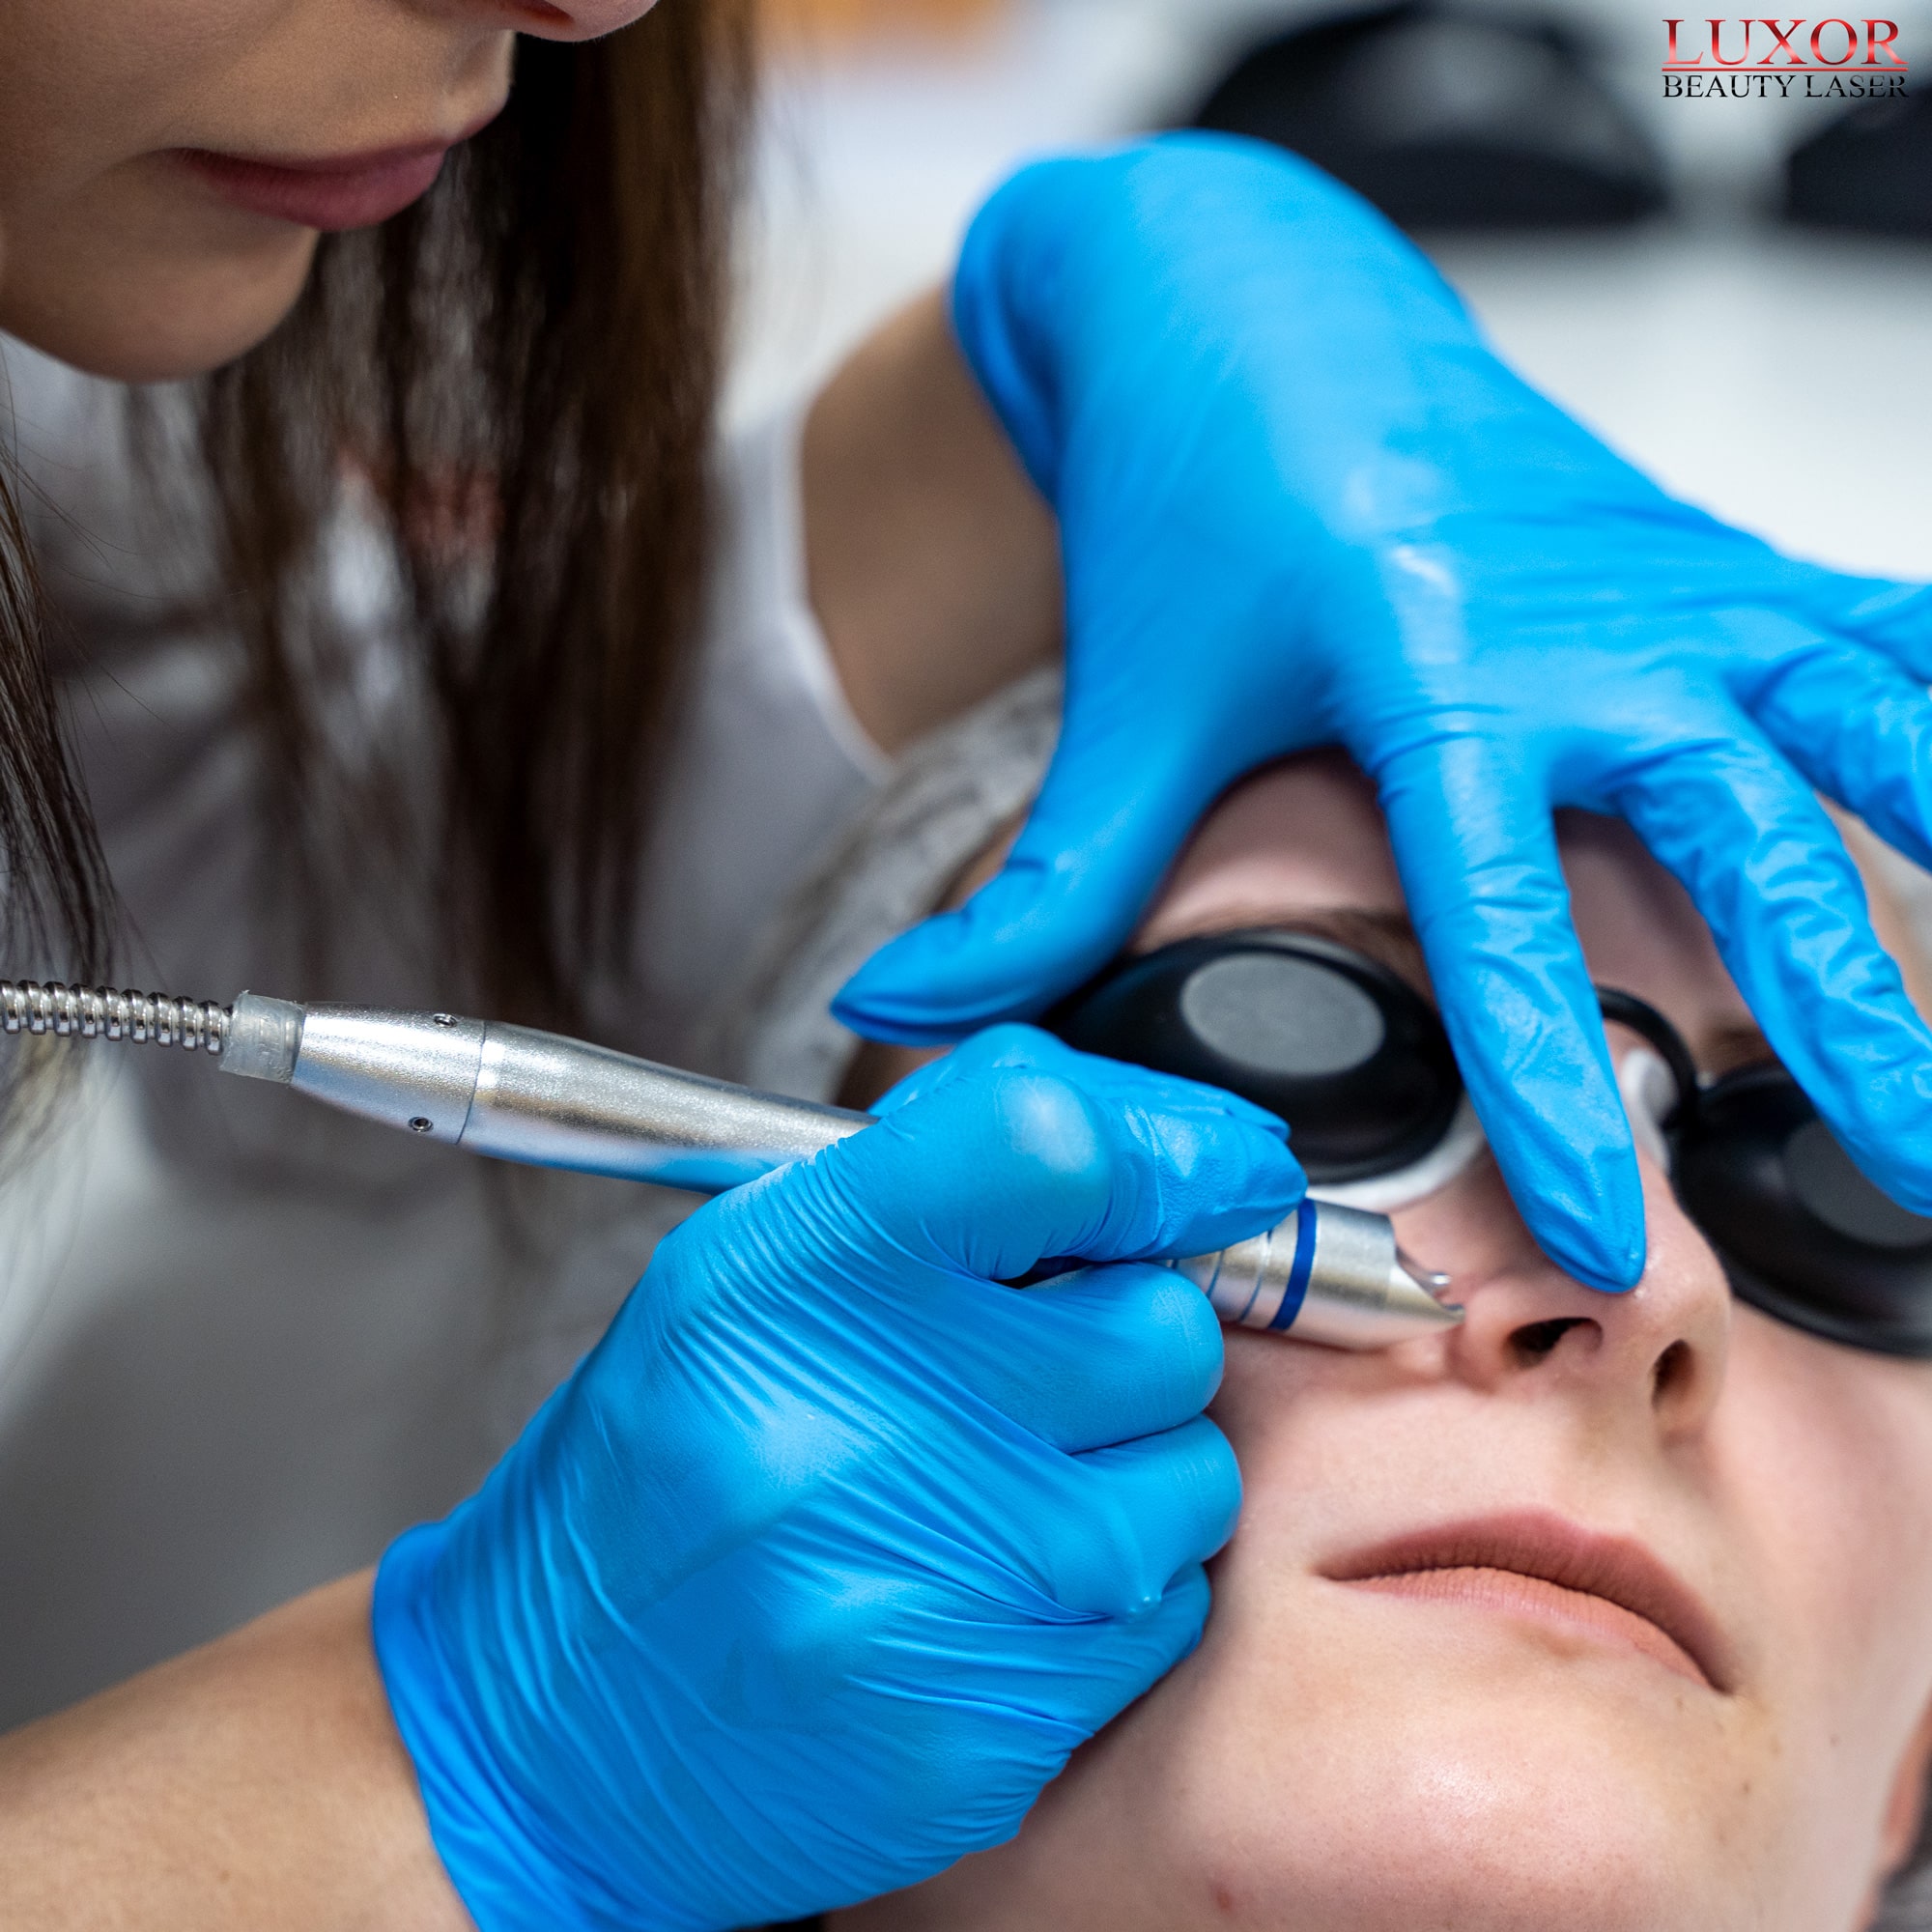 Kosmetolog instruuje uczestniczki jak przesuwać głowicę laserową w okolicy nosa